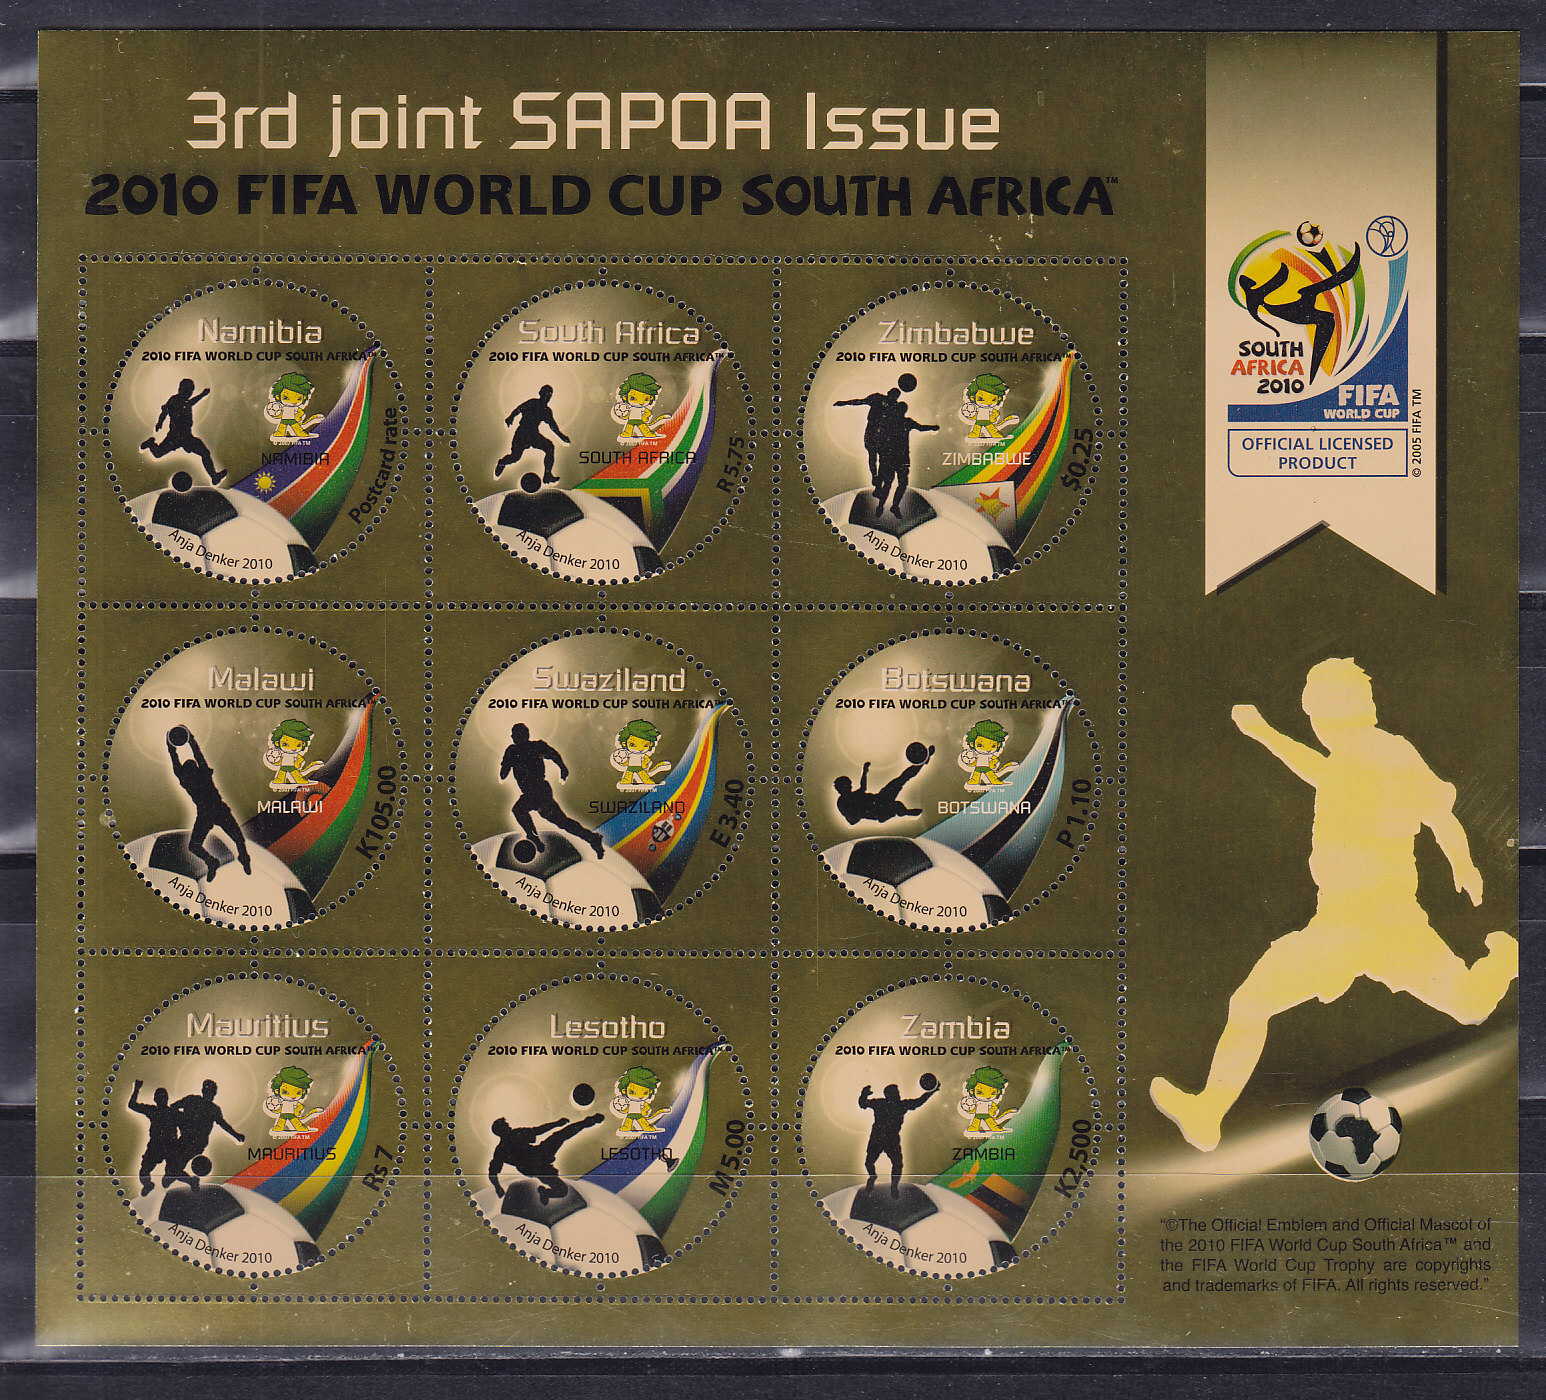 2010, ЧМ в ЮАР. SAPOA - 9 стран. Коллективный лист на золотой фольге